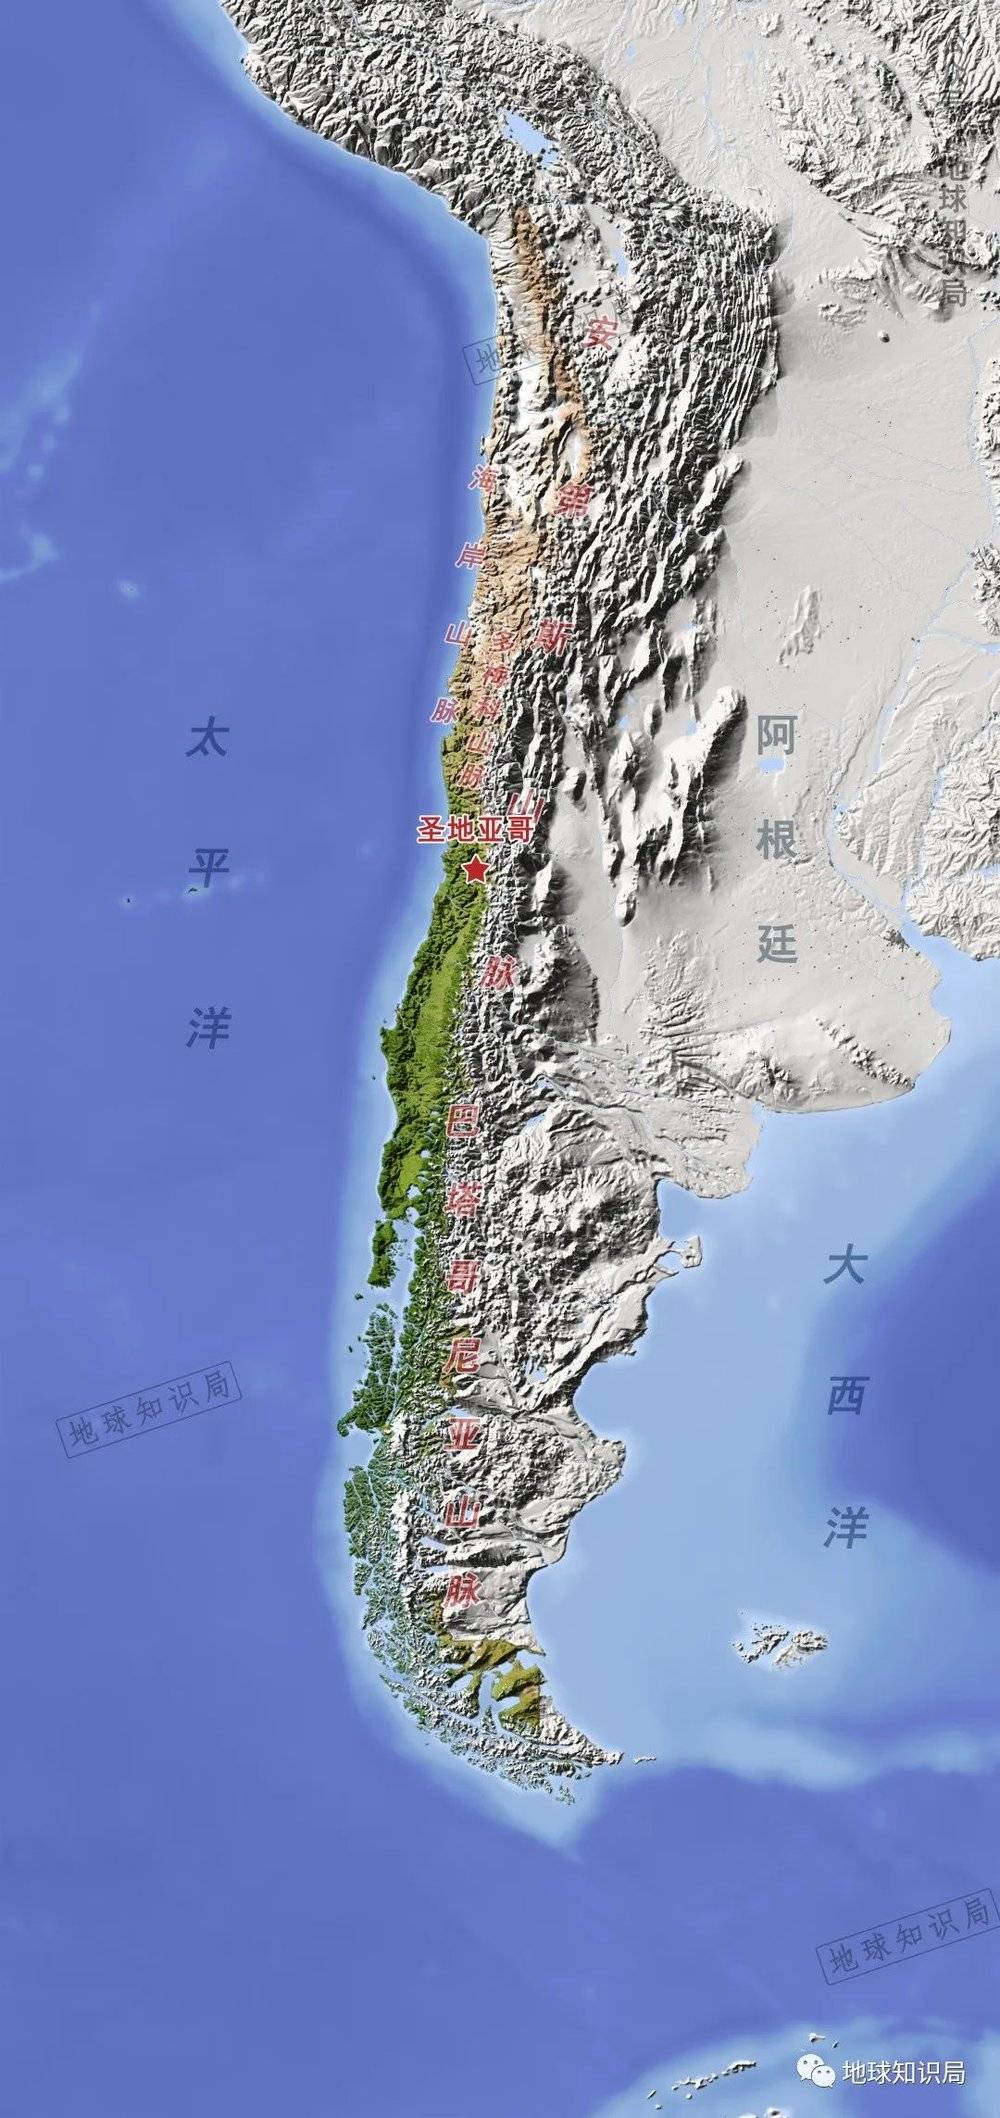 狭长的造型、陆地的地理屏障让智利发展出了发达的海力运输系统 